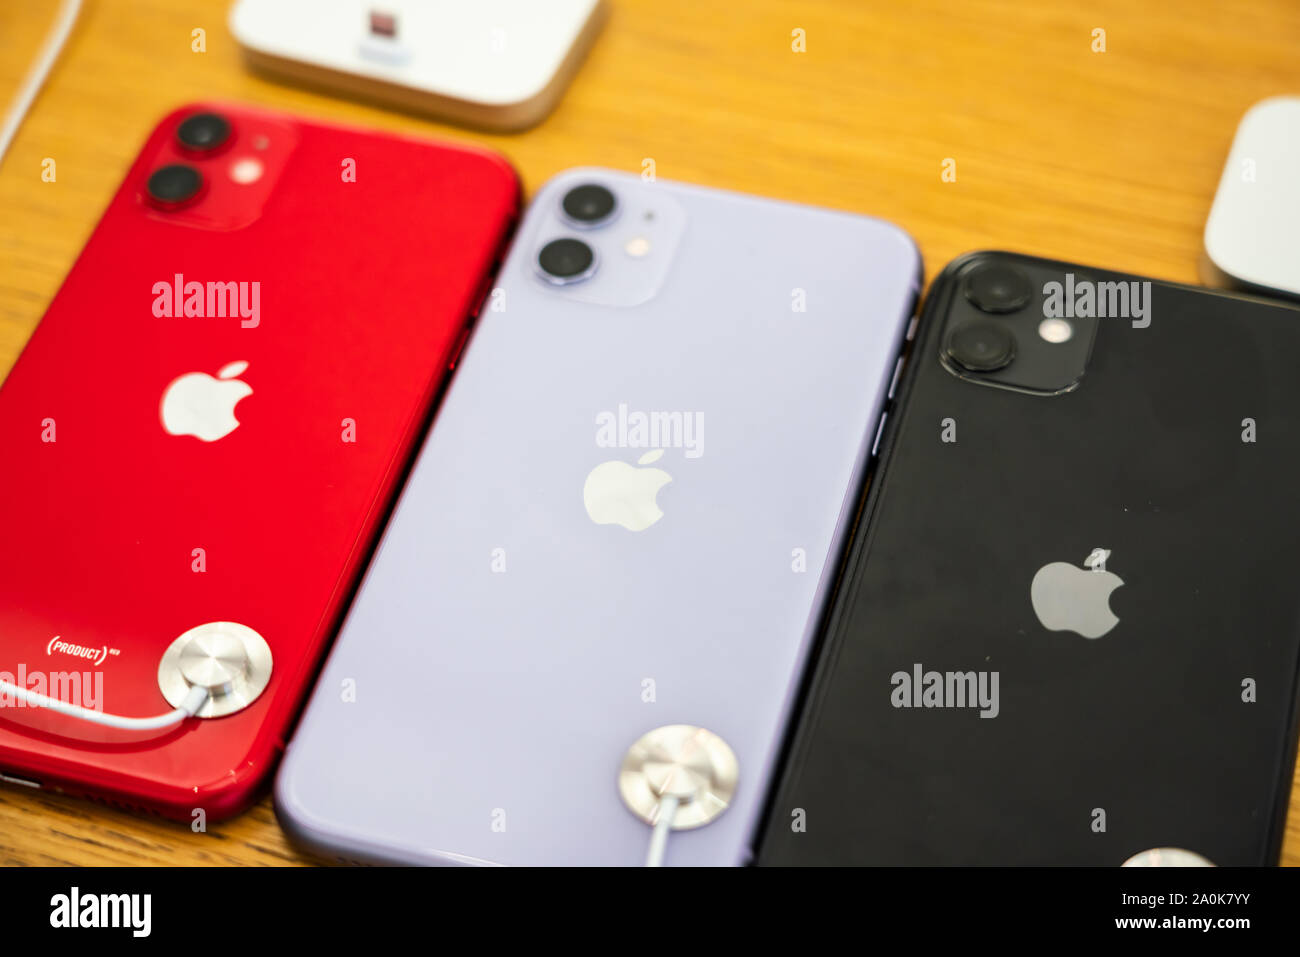 Die neue Apple iPhone 11 Modelle, die über einen Dual hinten Kameras Design, dargestellt in einem Apple Store an der IFC Mall in Pudong New Area, Shanghai. Apple hat den Vertrieb seiner neuesten iPhone 11 Serie in China. Stockfoto